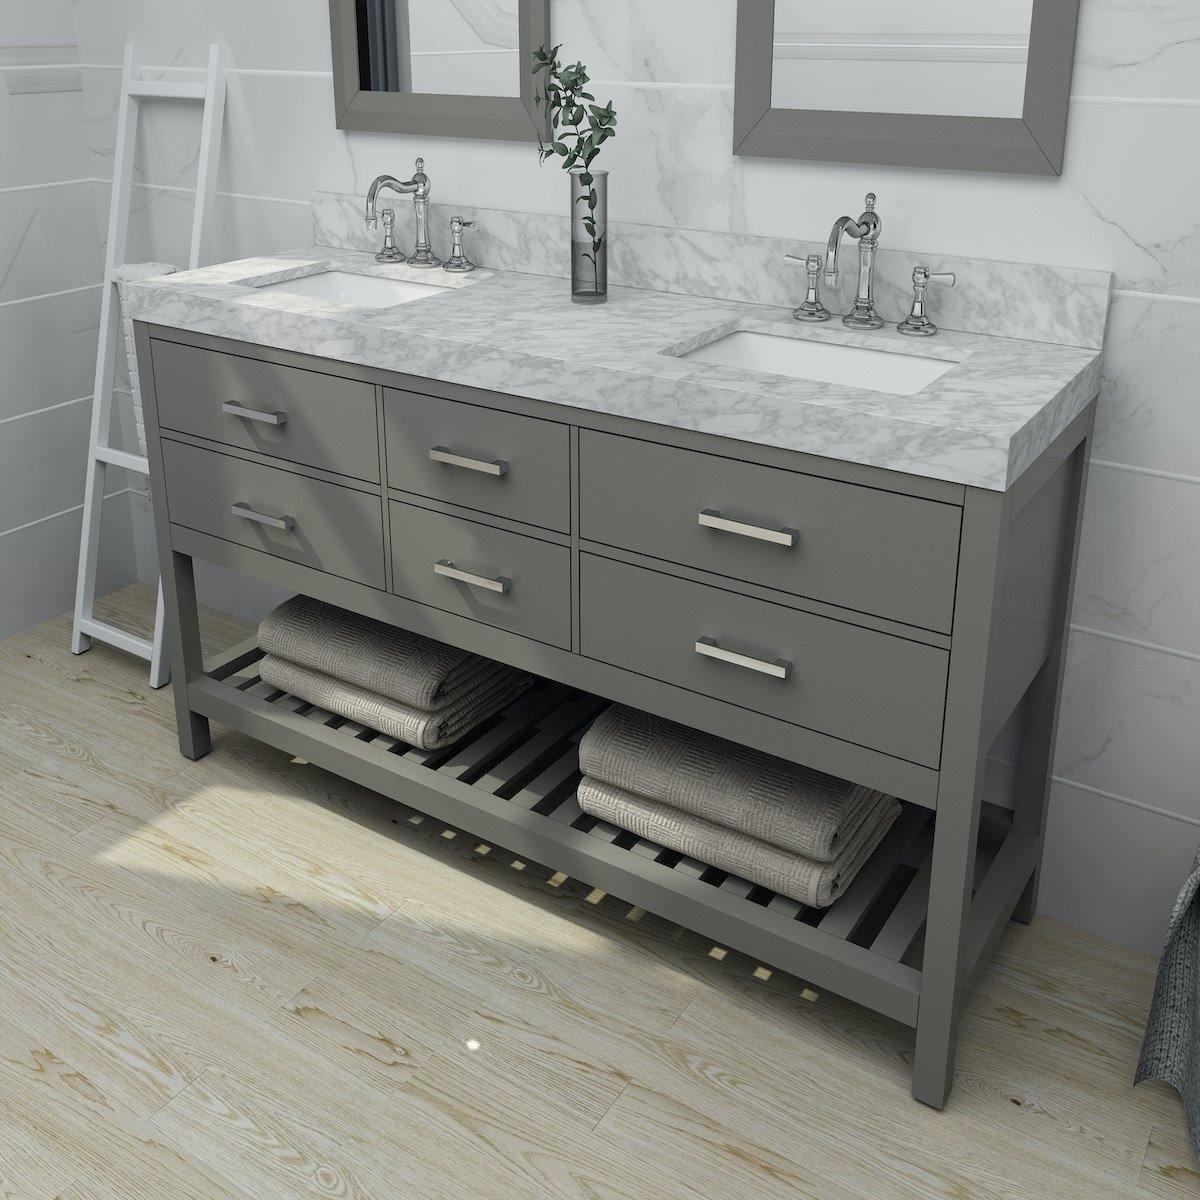 Ancerre Designs Elizabeth 72 Inch Sapphire Gray Double Vanity in Bathroom